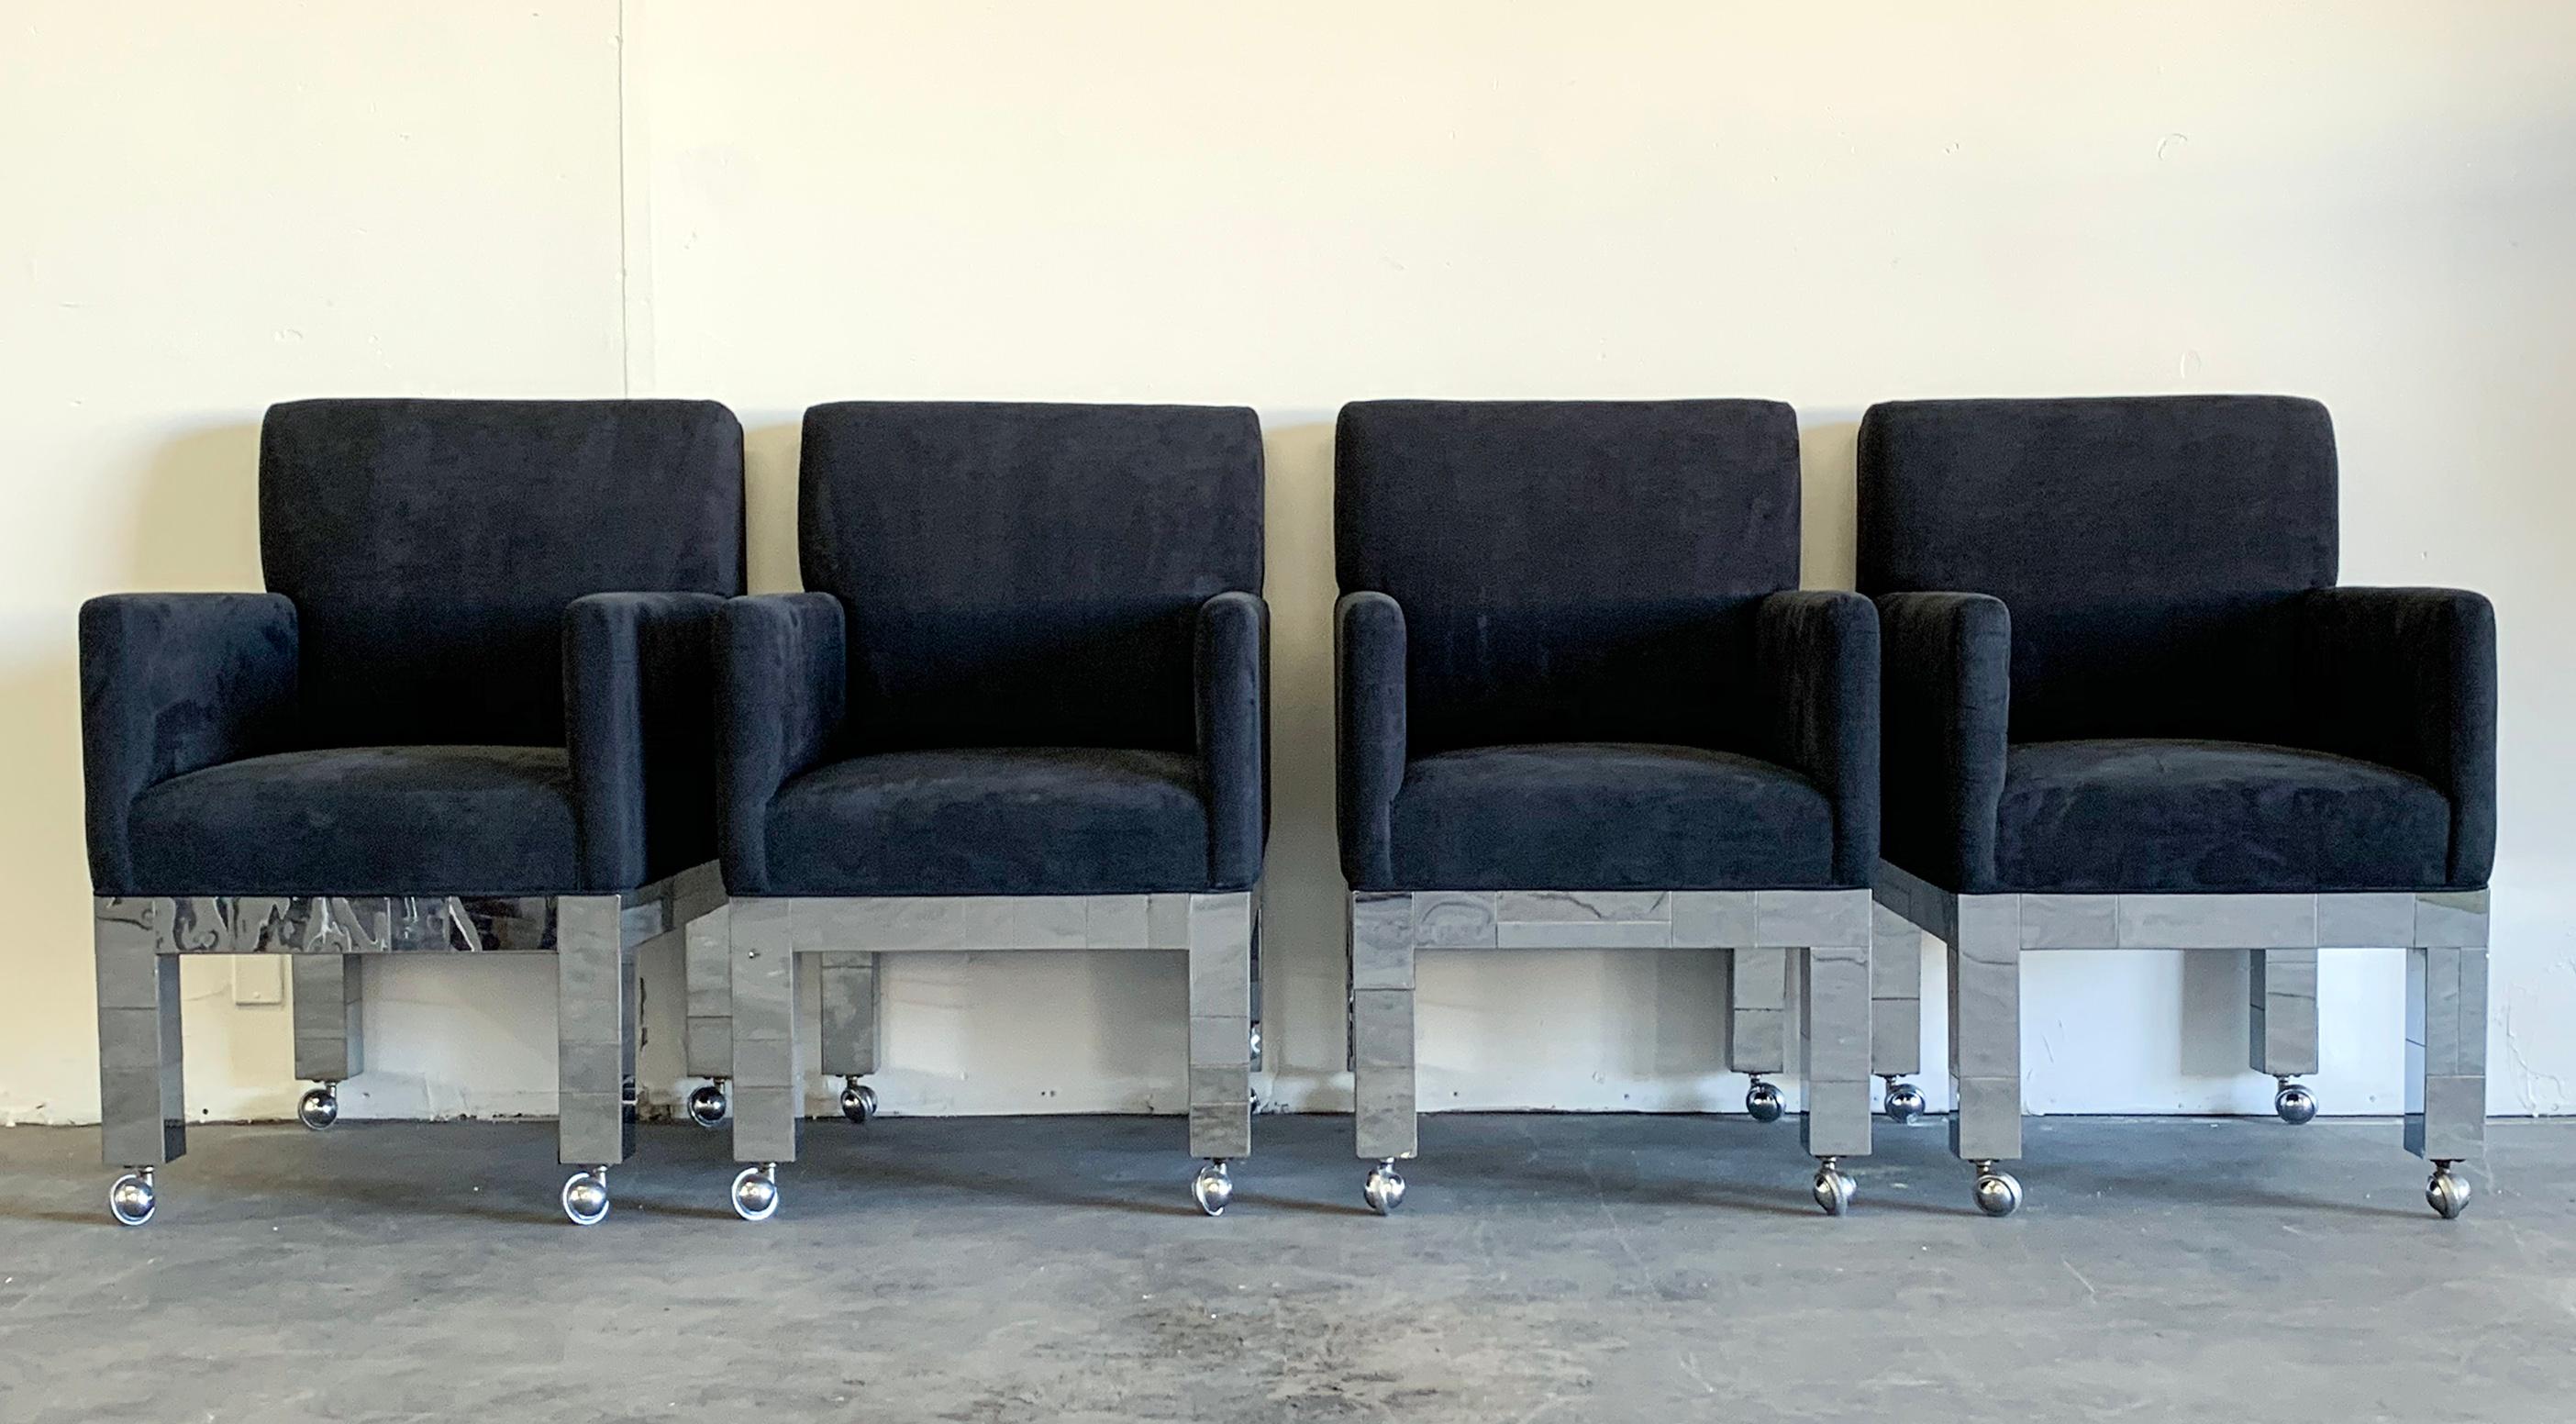 Ein atemberaubendes und seltenes Set von 4 verchromten Cityscape-Stühlen von Paul Evans für Directional. Dieses aufeinander abgestimmte Set von PE-241 Sesseln ist mit geschmeidigem, schwarzem, mattem Ultraleder gepolstert und verfügt über das für